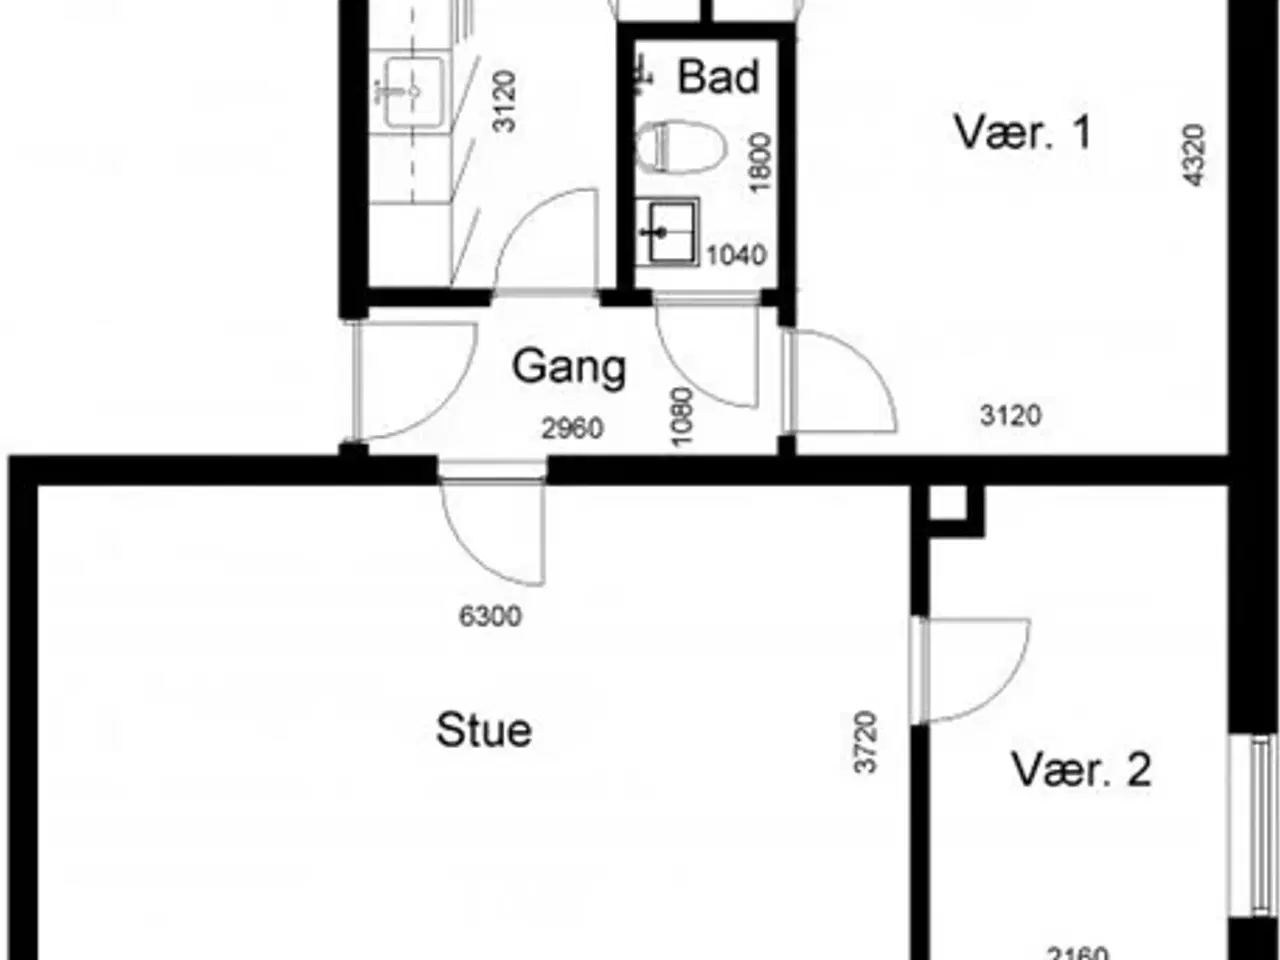 Billede 1 - Viborgvej, 76 m2, 3 værelser, 5.092 kr., Skive, Viborg